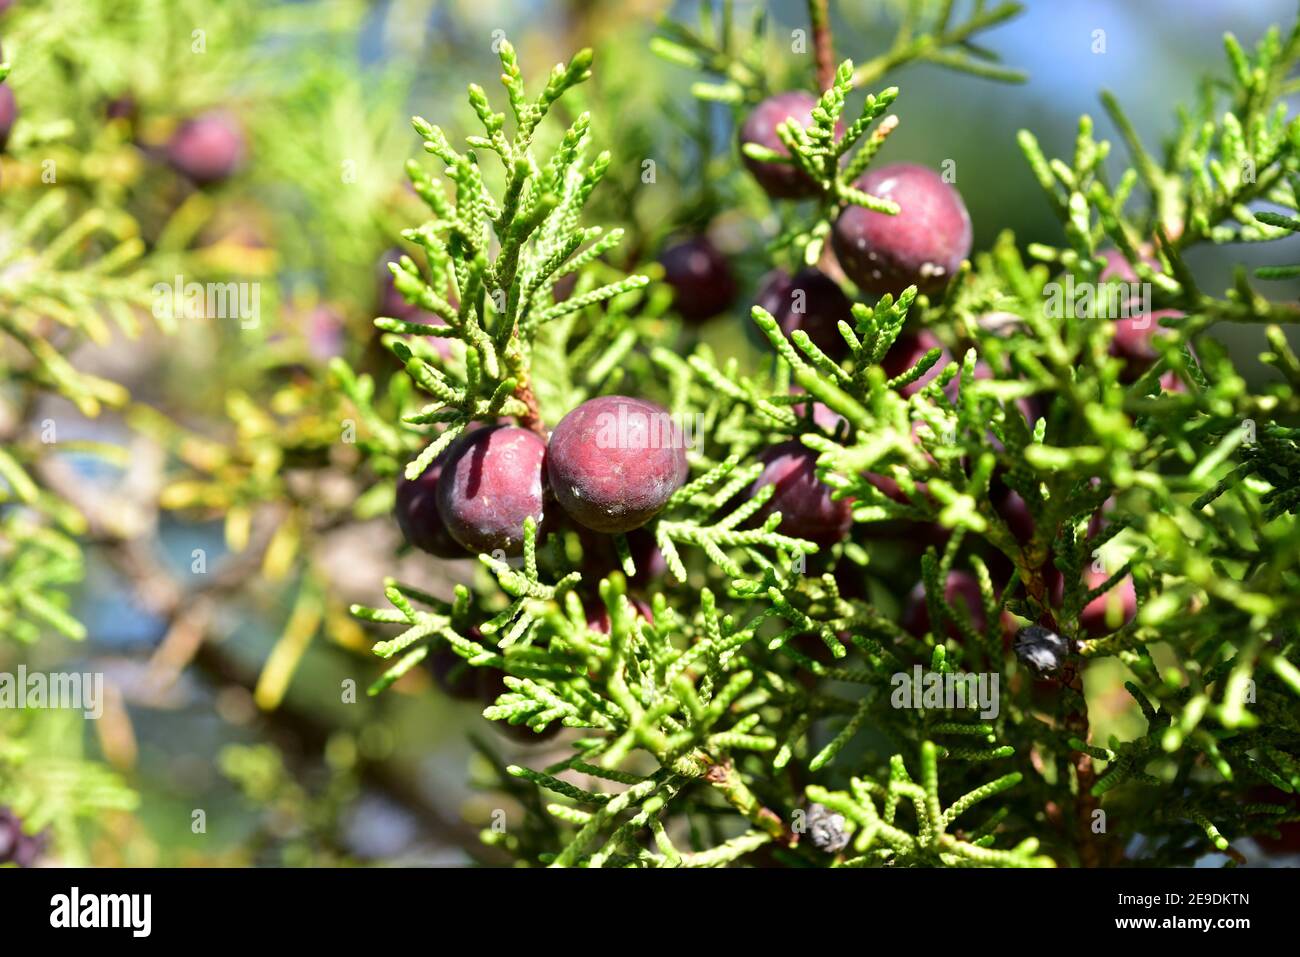 El enebro fenicio (Juniperus phoenicea) es un arbusto perenne de coníferas nativo de la región mediterránea. Detalle de los conos (bayas) y las hojas. Foto de stock